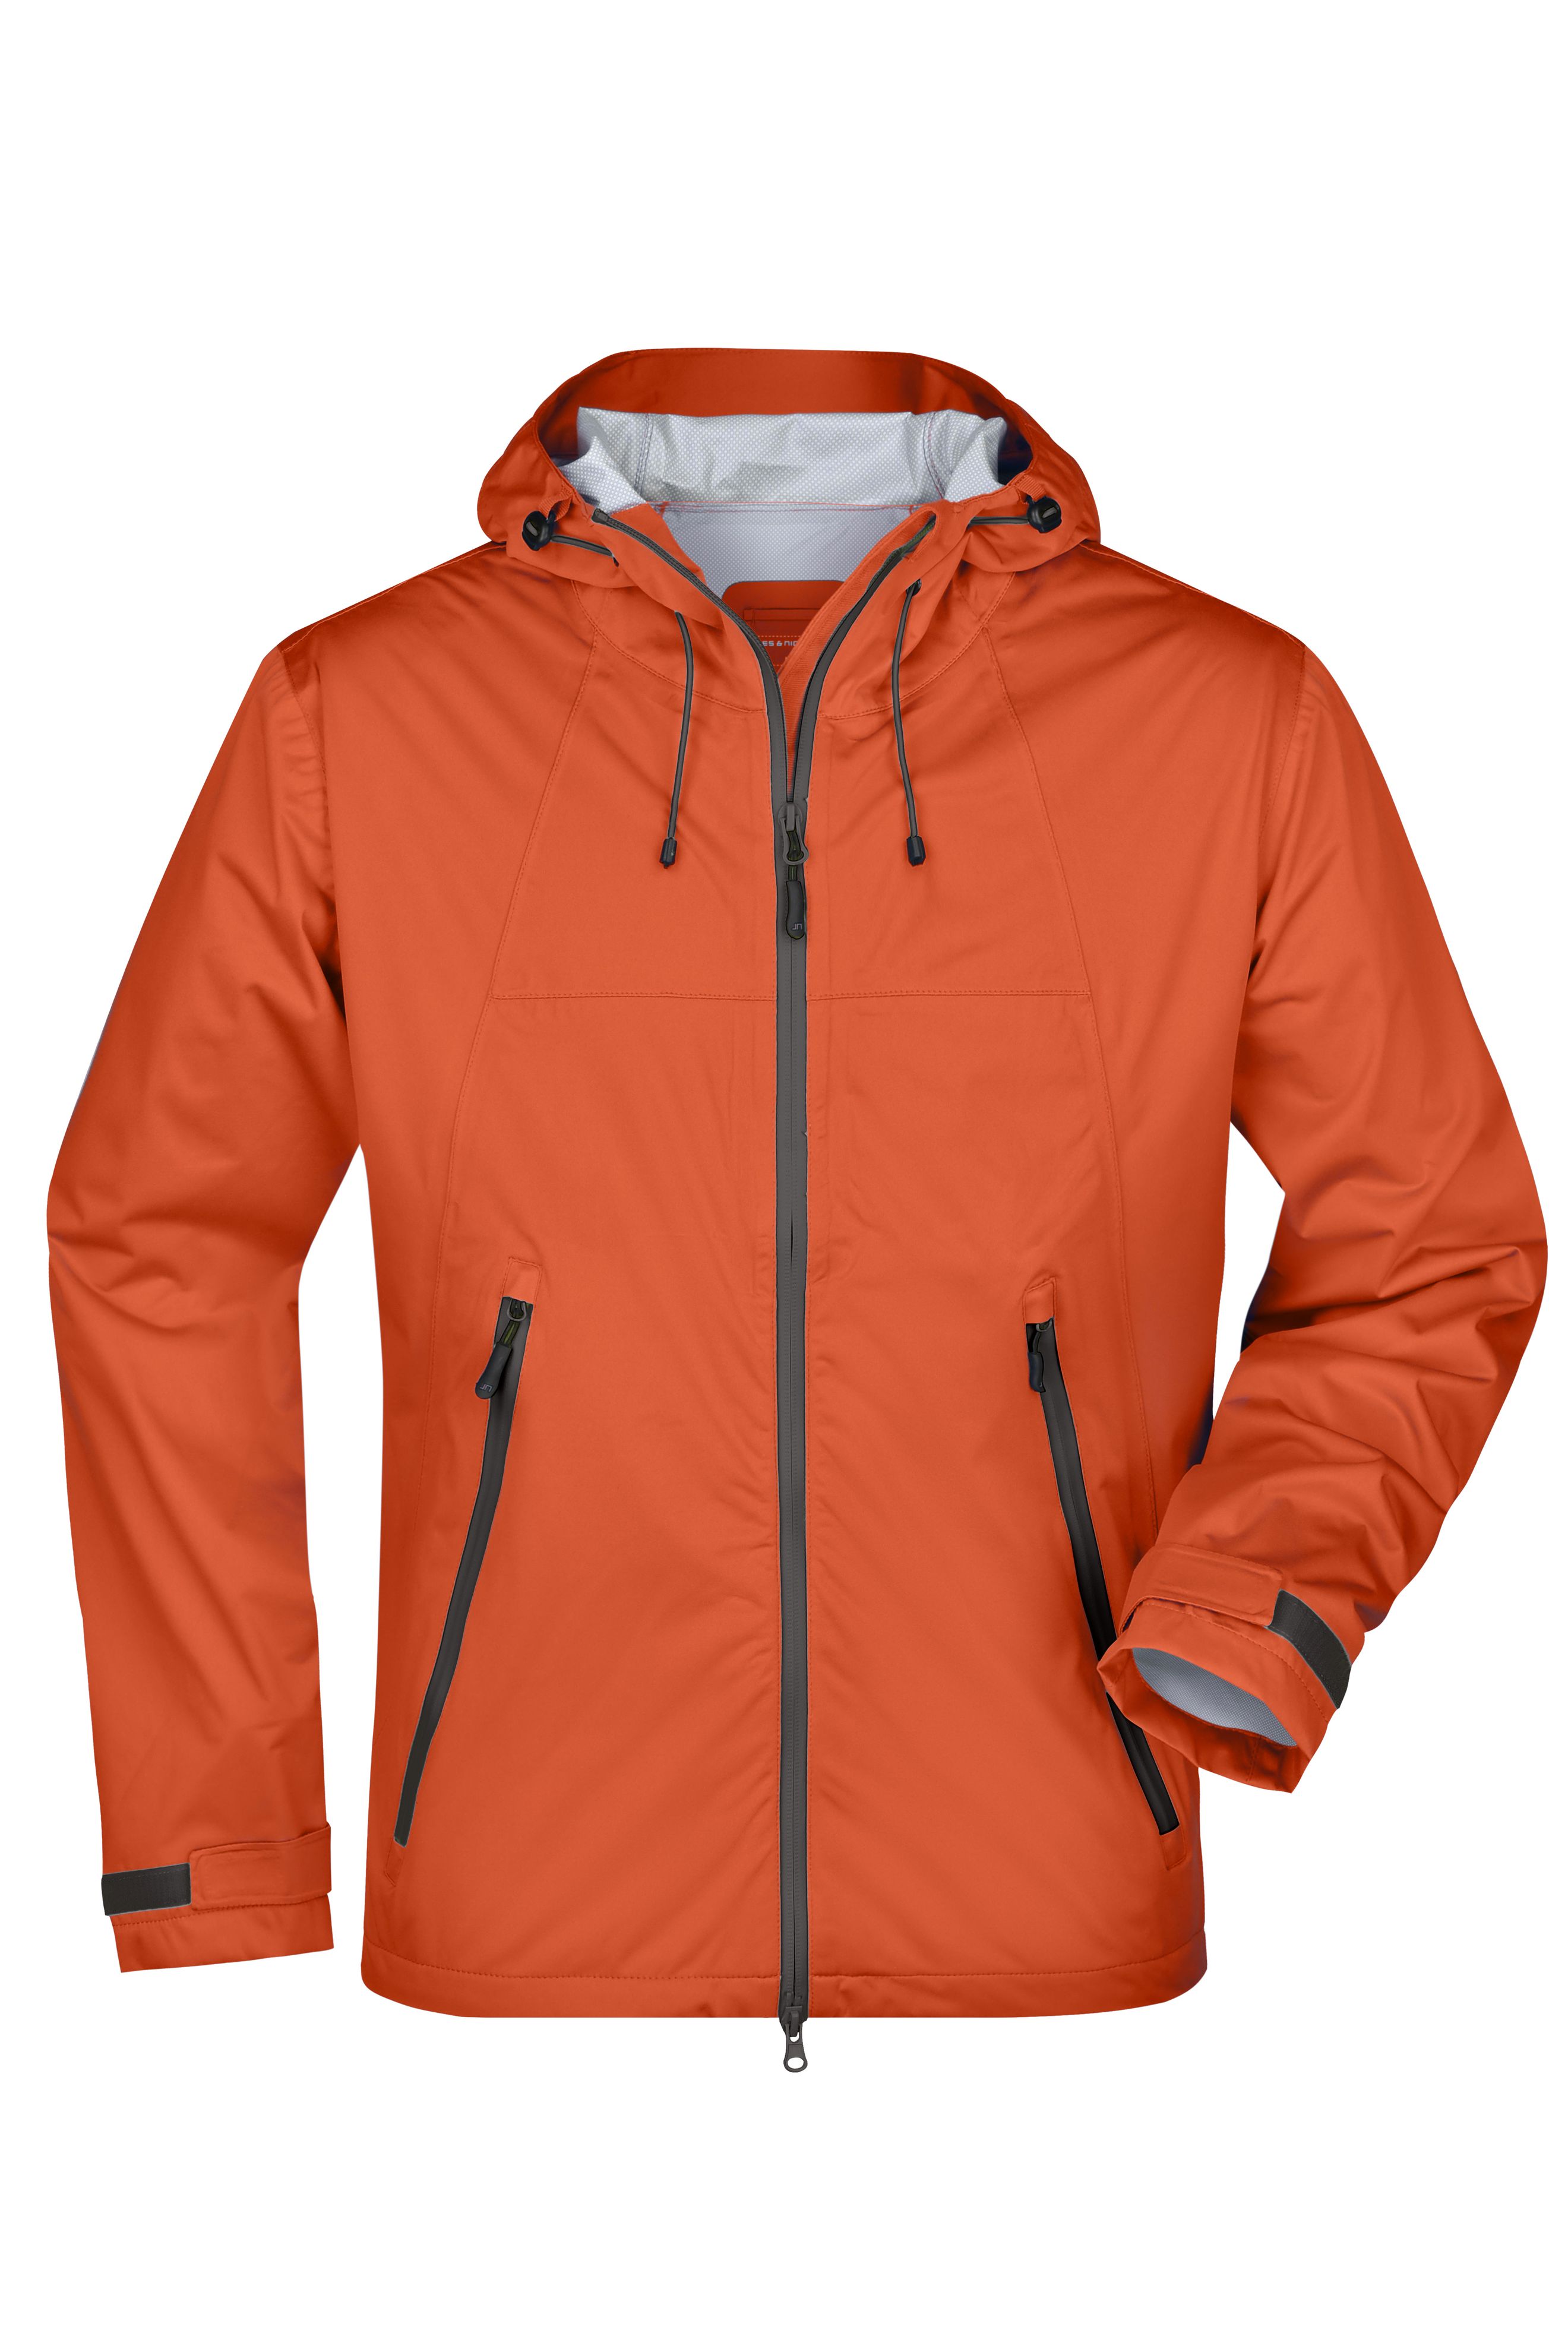 Men Men's Outdoor Jacket Dark-orange/iron-grey-Promotextilien.de